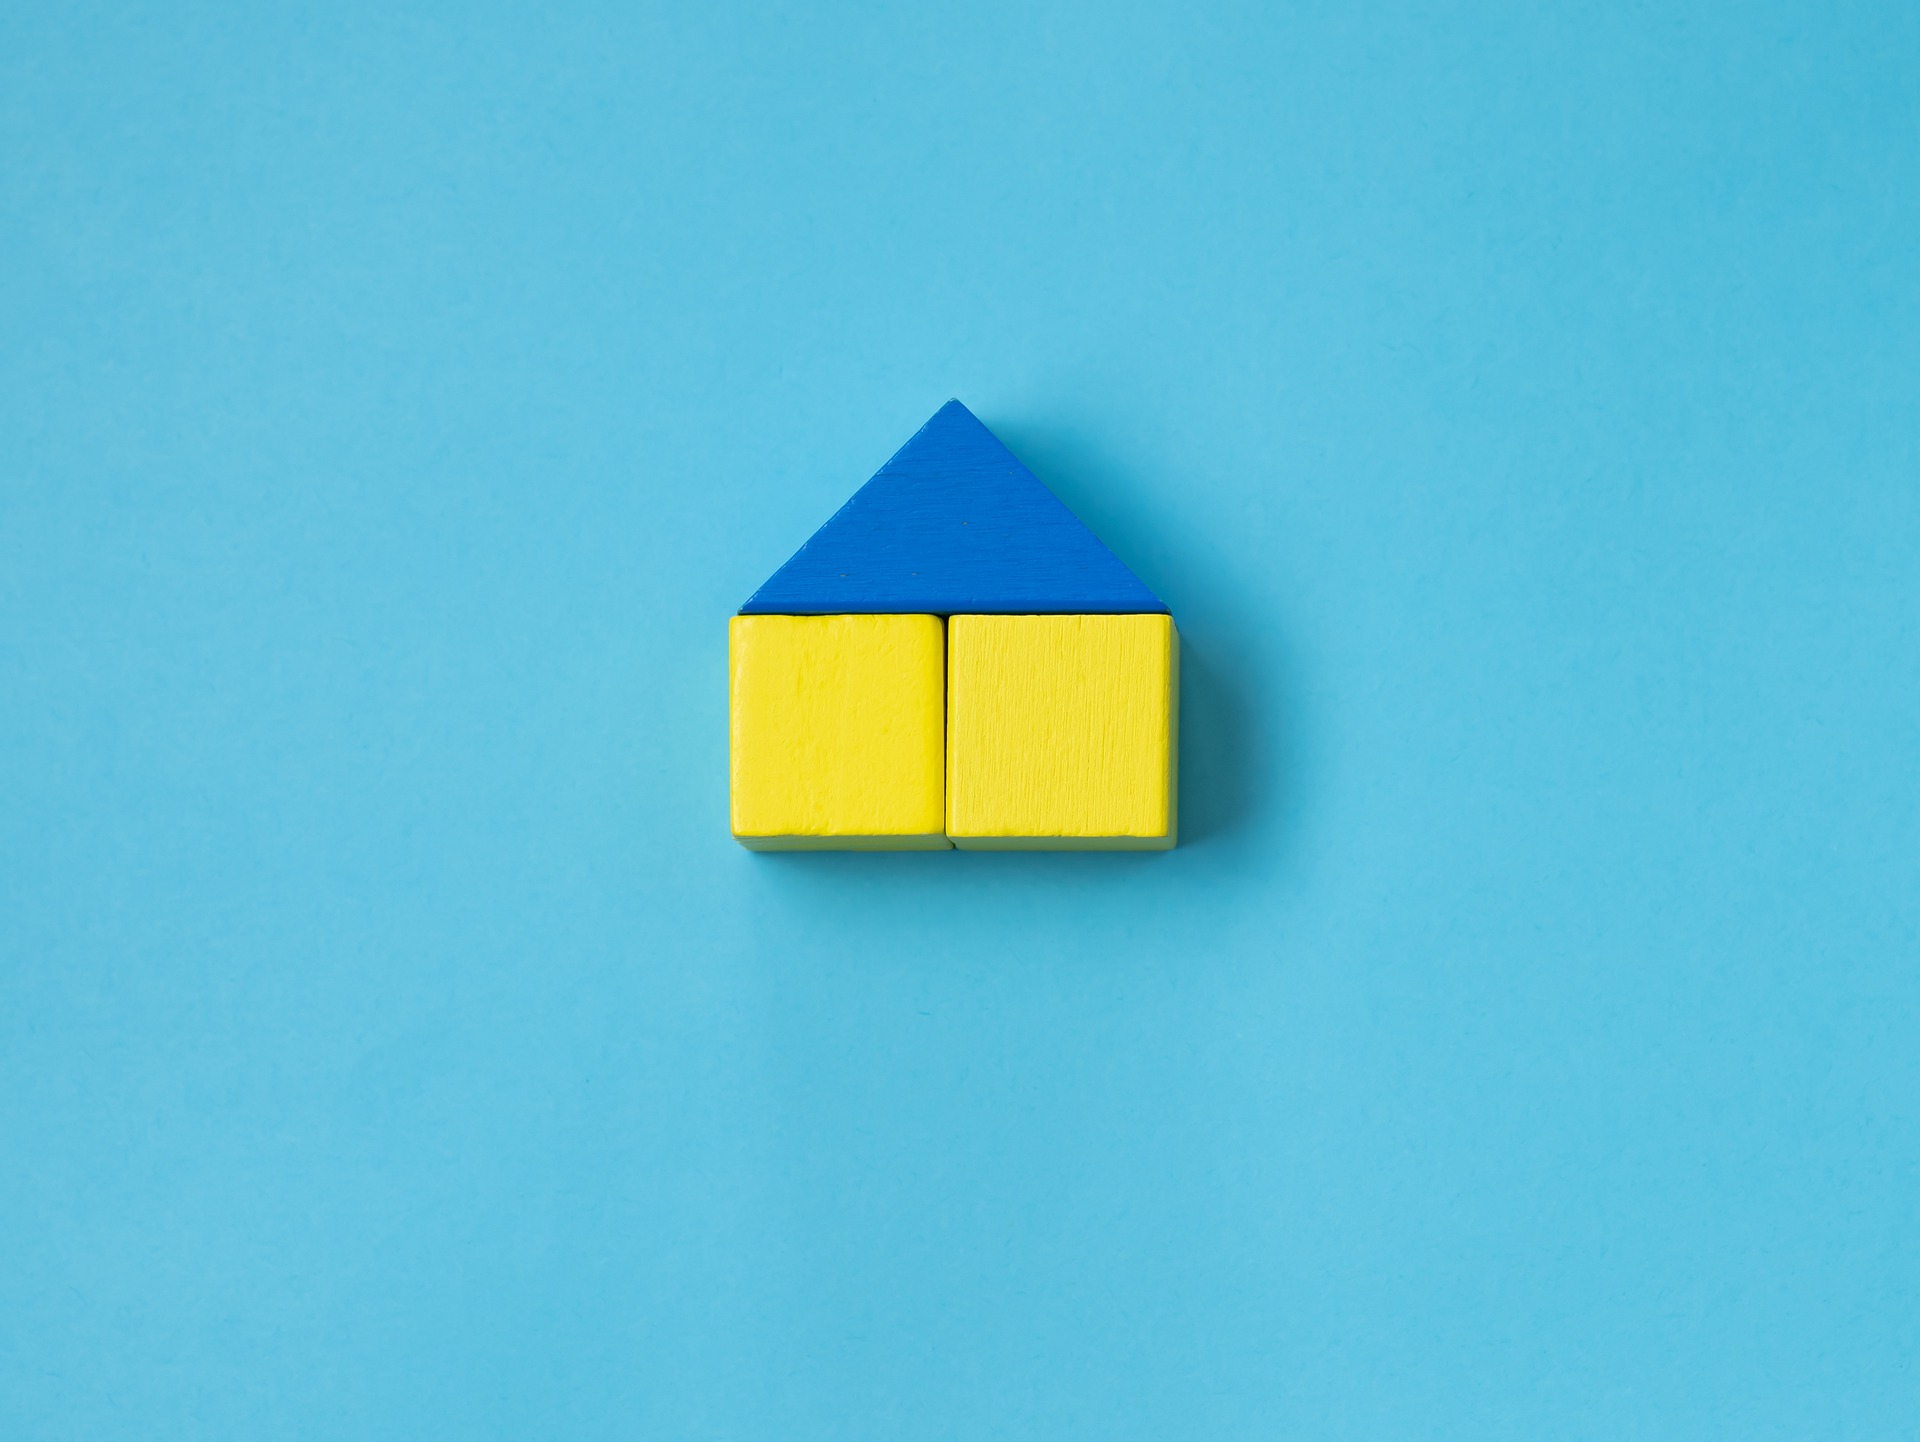 Haus blau gelb - Bild von Daria Hurst auf Pixabay-min